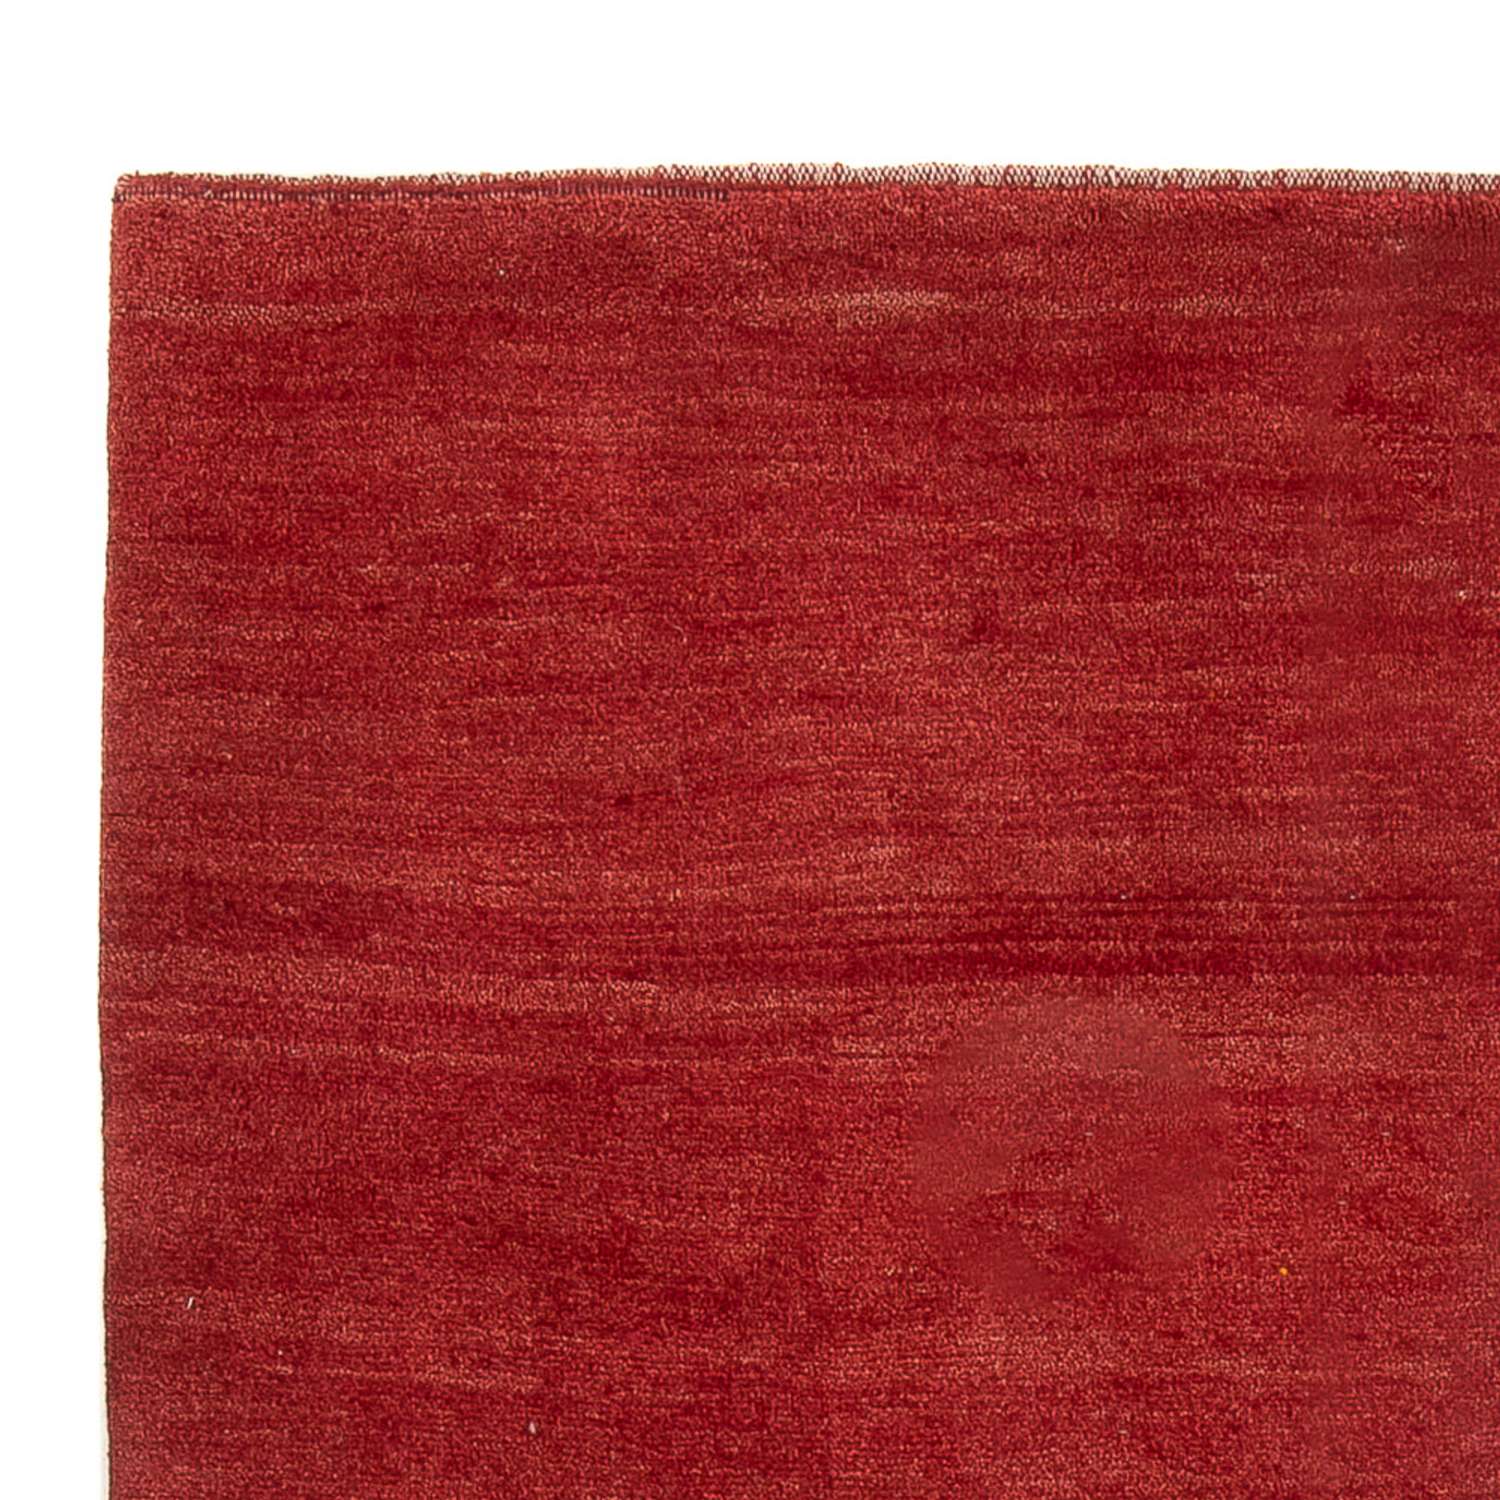 Tapis Gabbeh - Persan - 242 x 169 cm - rouge